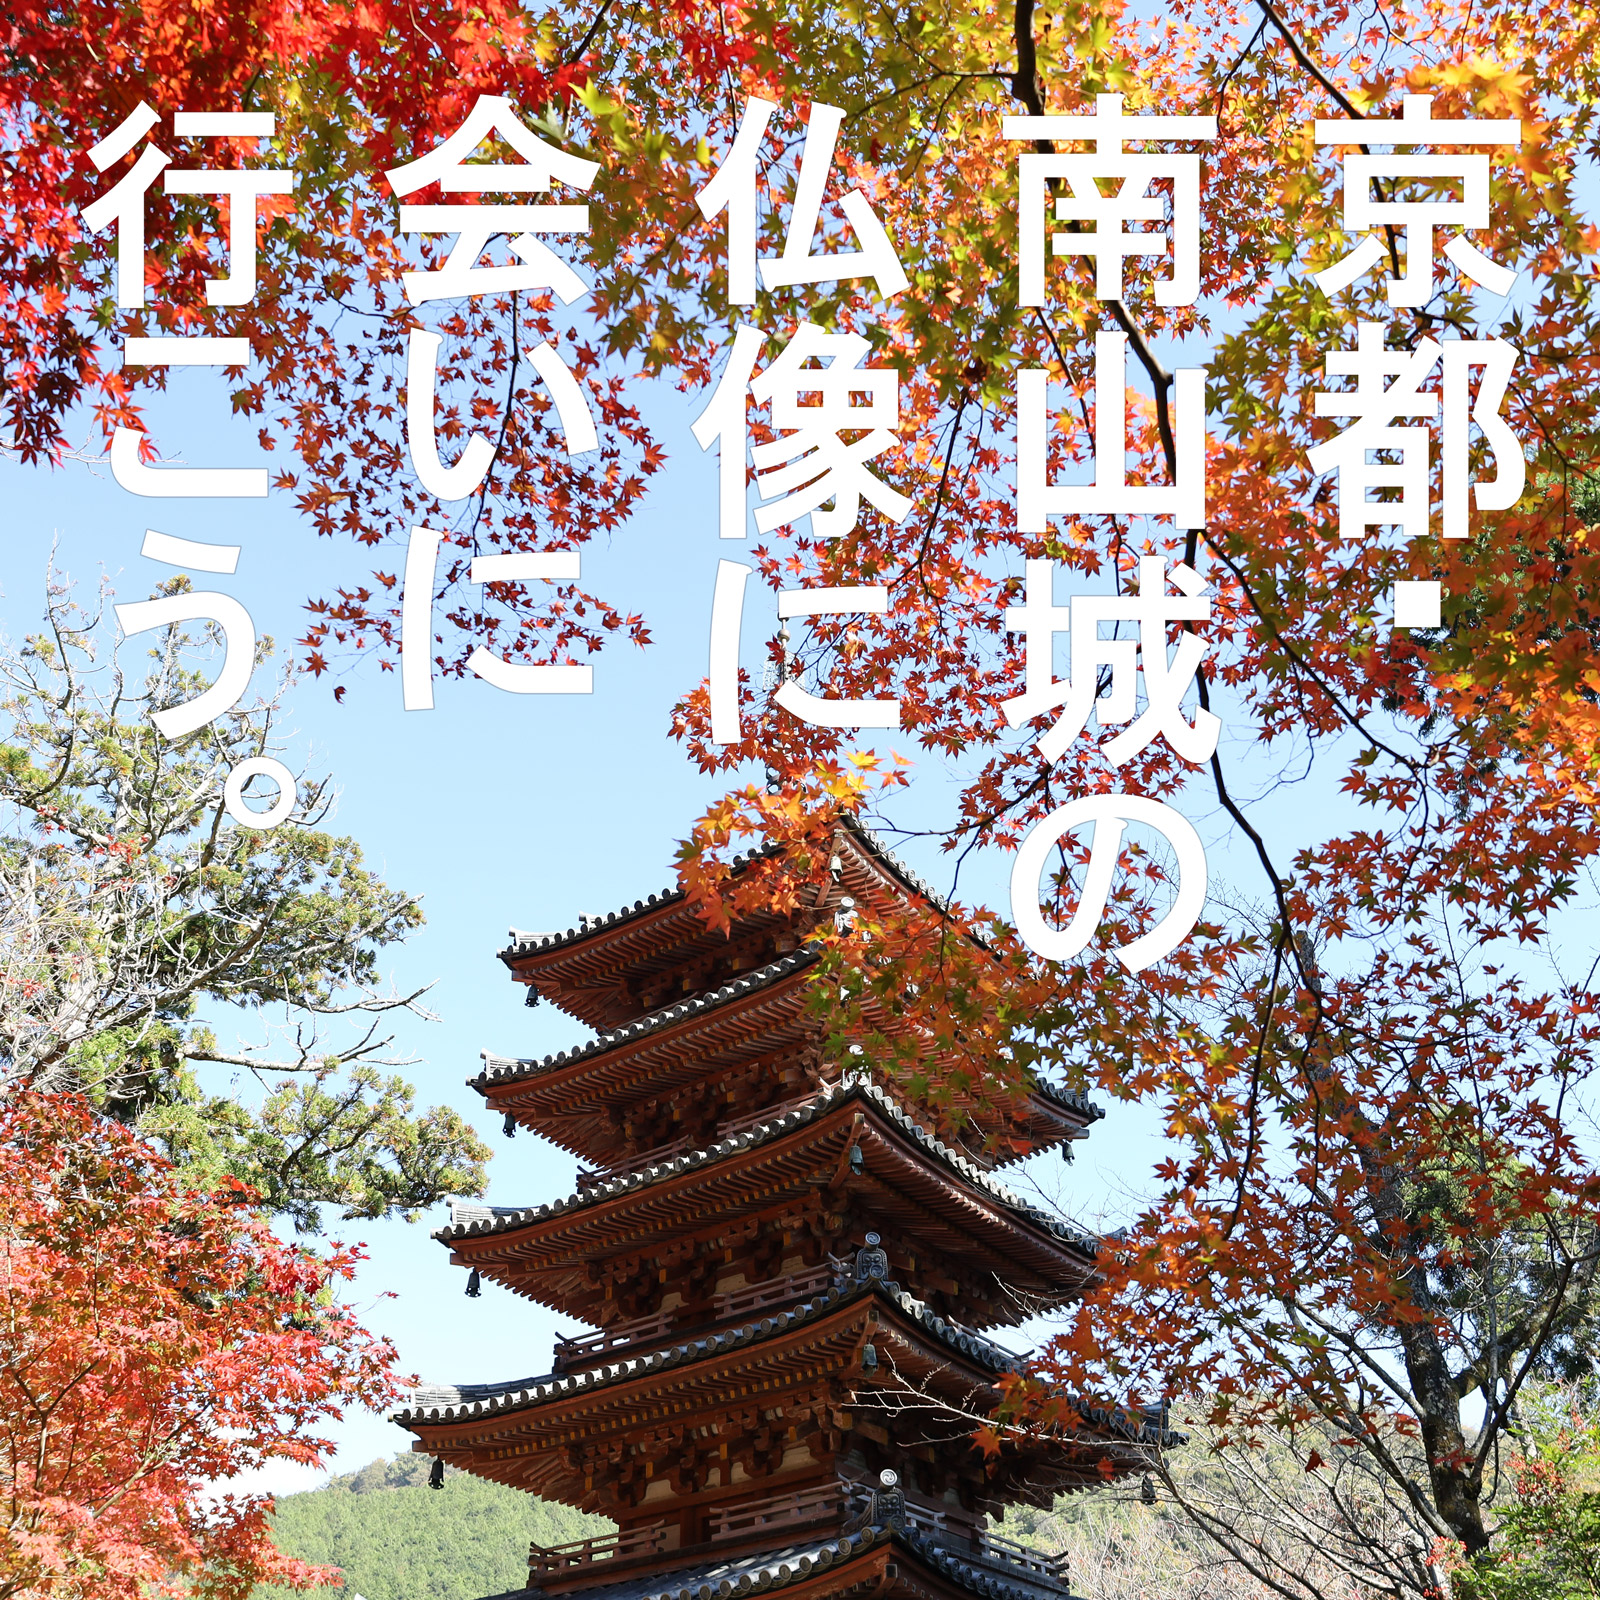 「京都・南山城の仏像」に会いに行こう。南山城古寺巡礼ツアー！